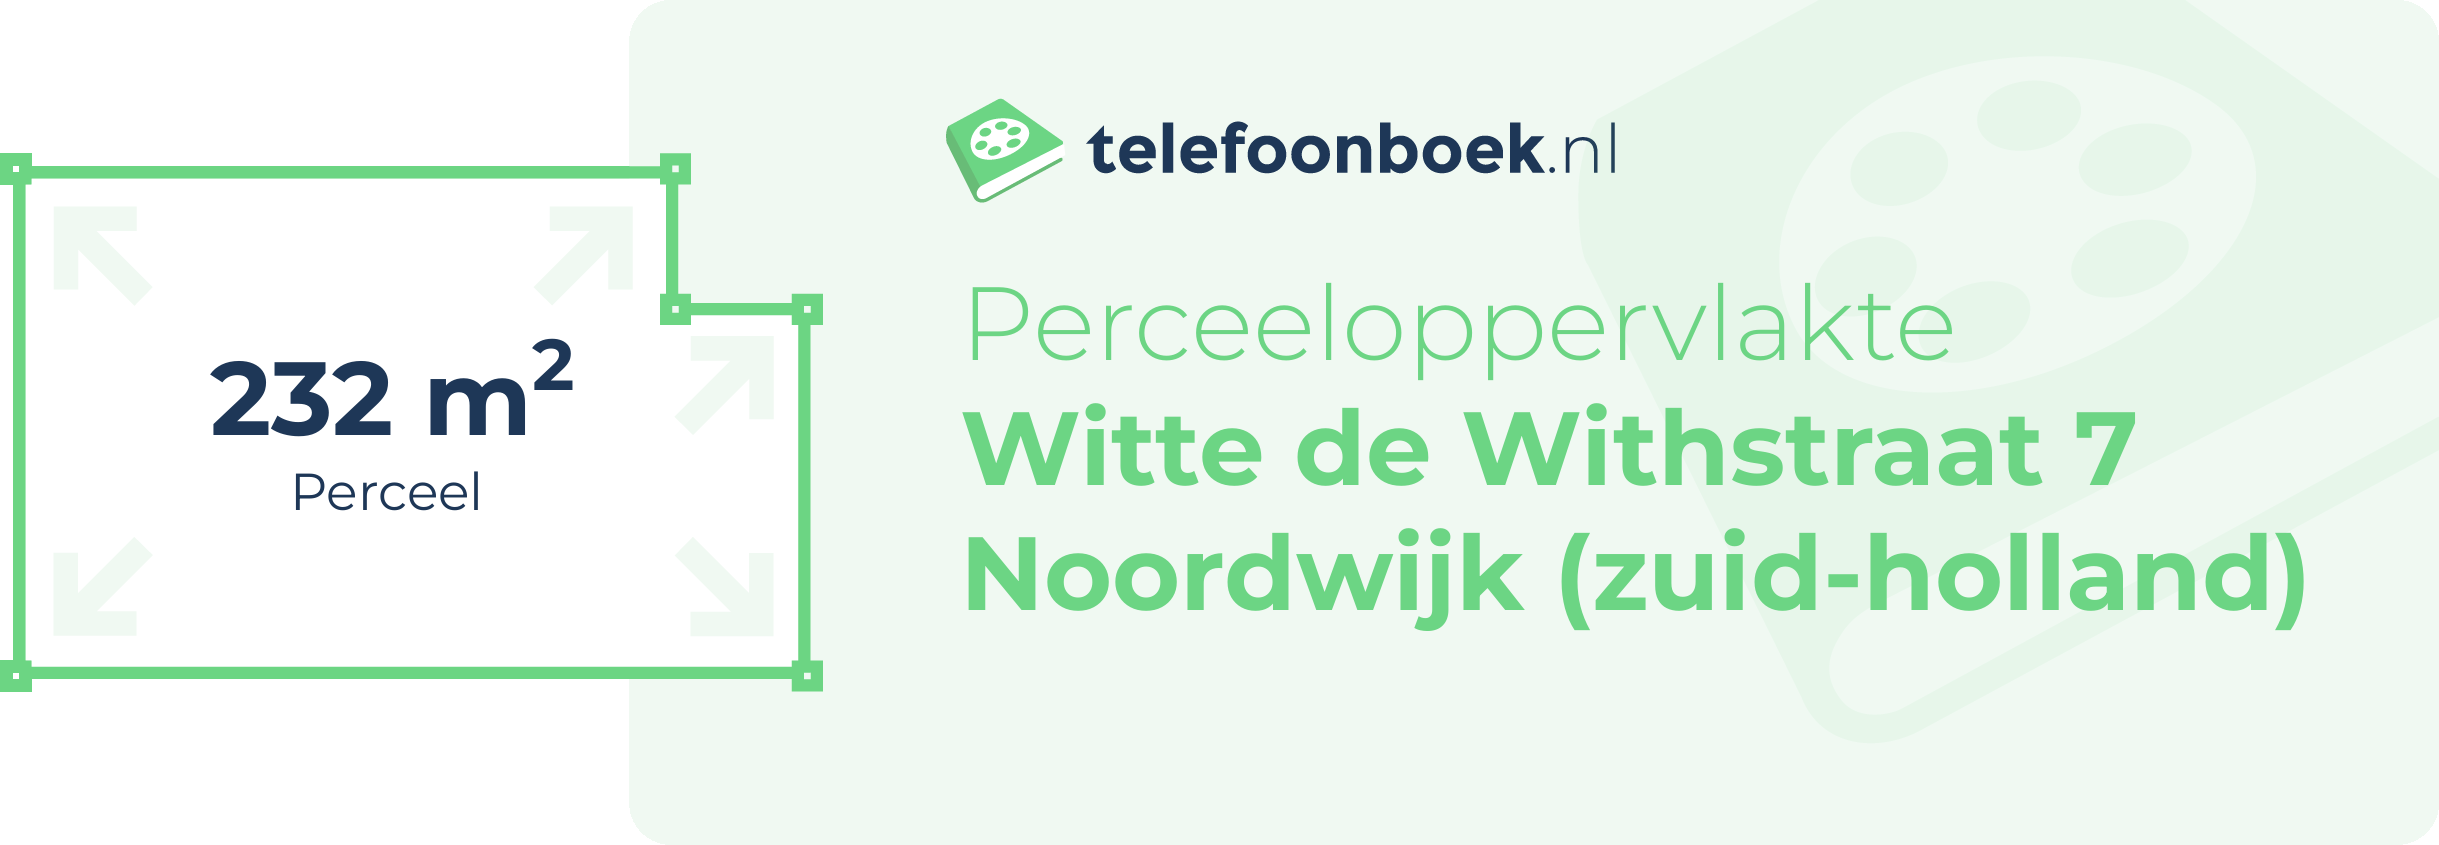 Perceeloppervlakte Witte De Withstraat 7 Noordwijk (Zuid-Holland)